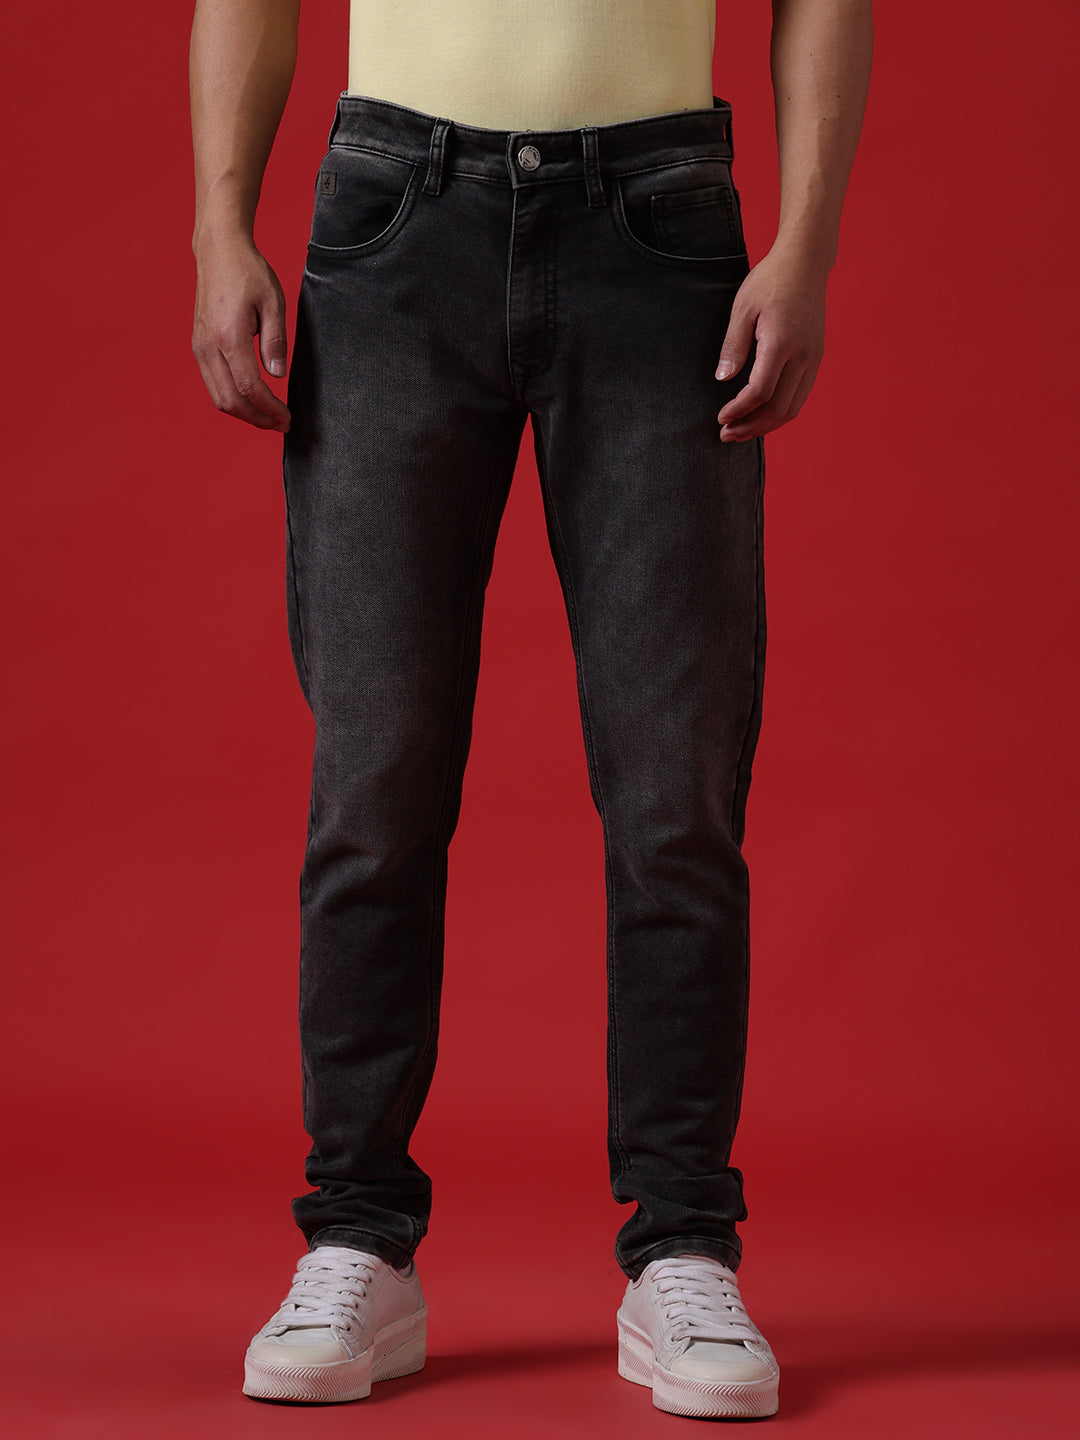 New Sparky Men Black Jeans - Buy New Sparky Men Black Jeans Online at Best  Prices in India | Flipkart.com